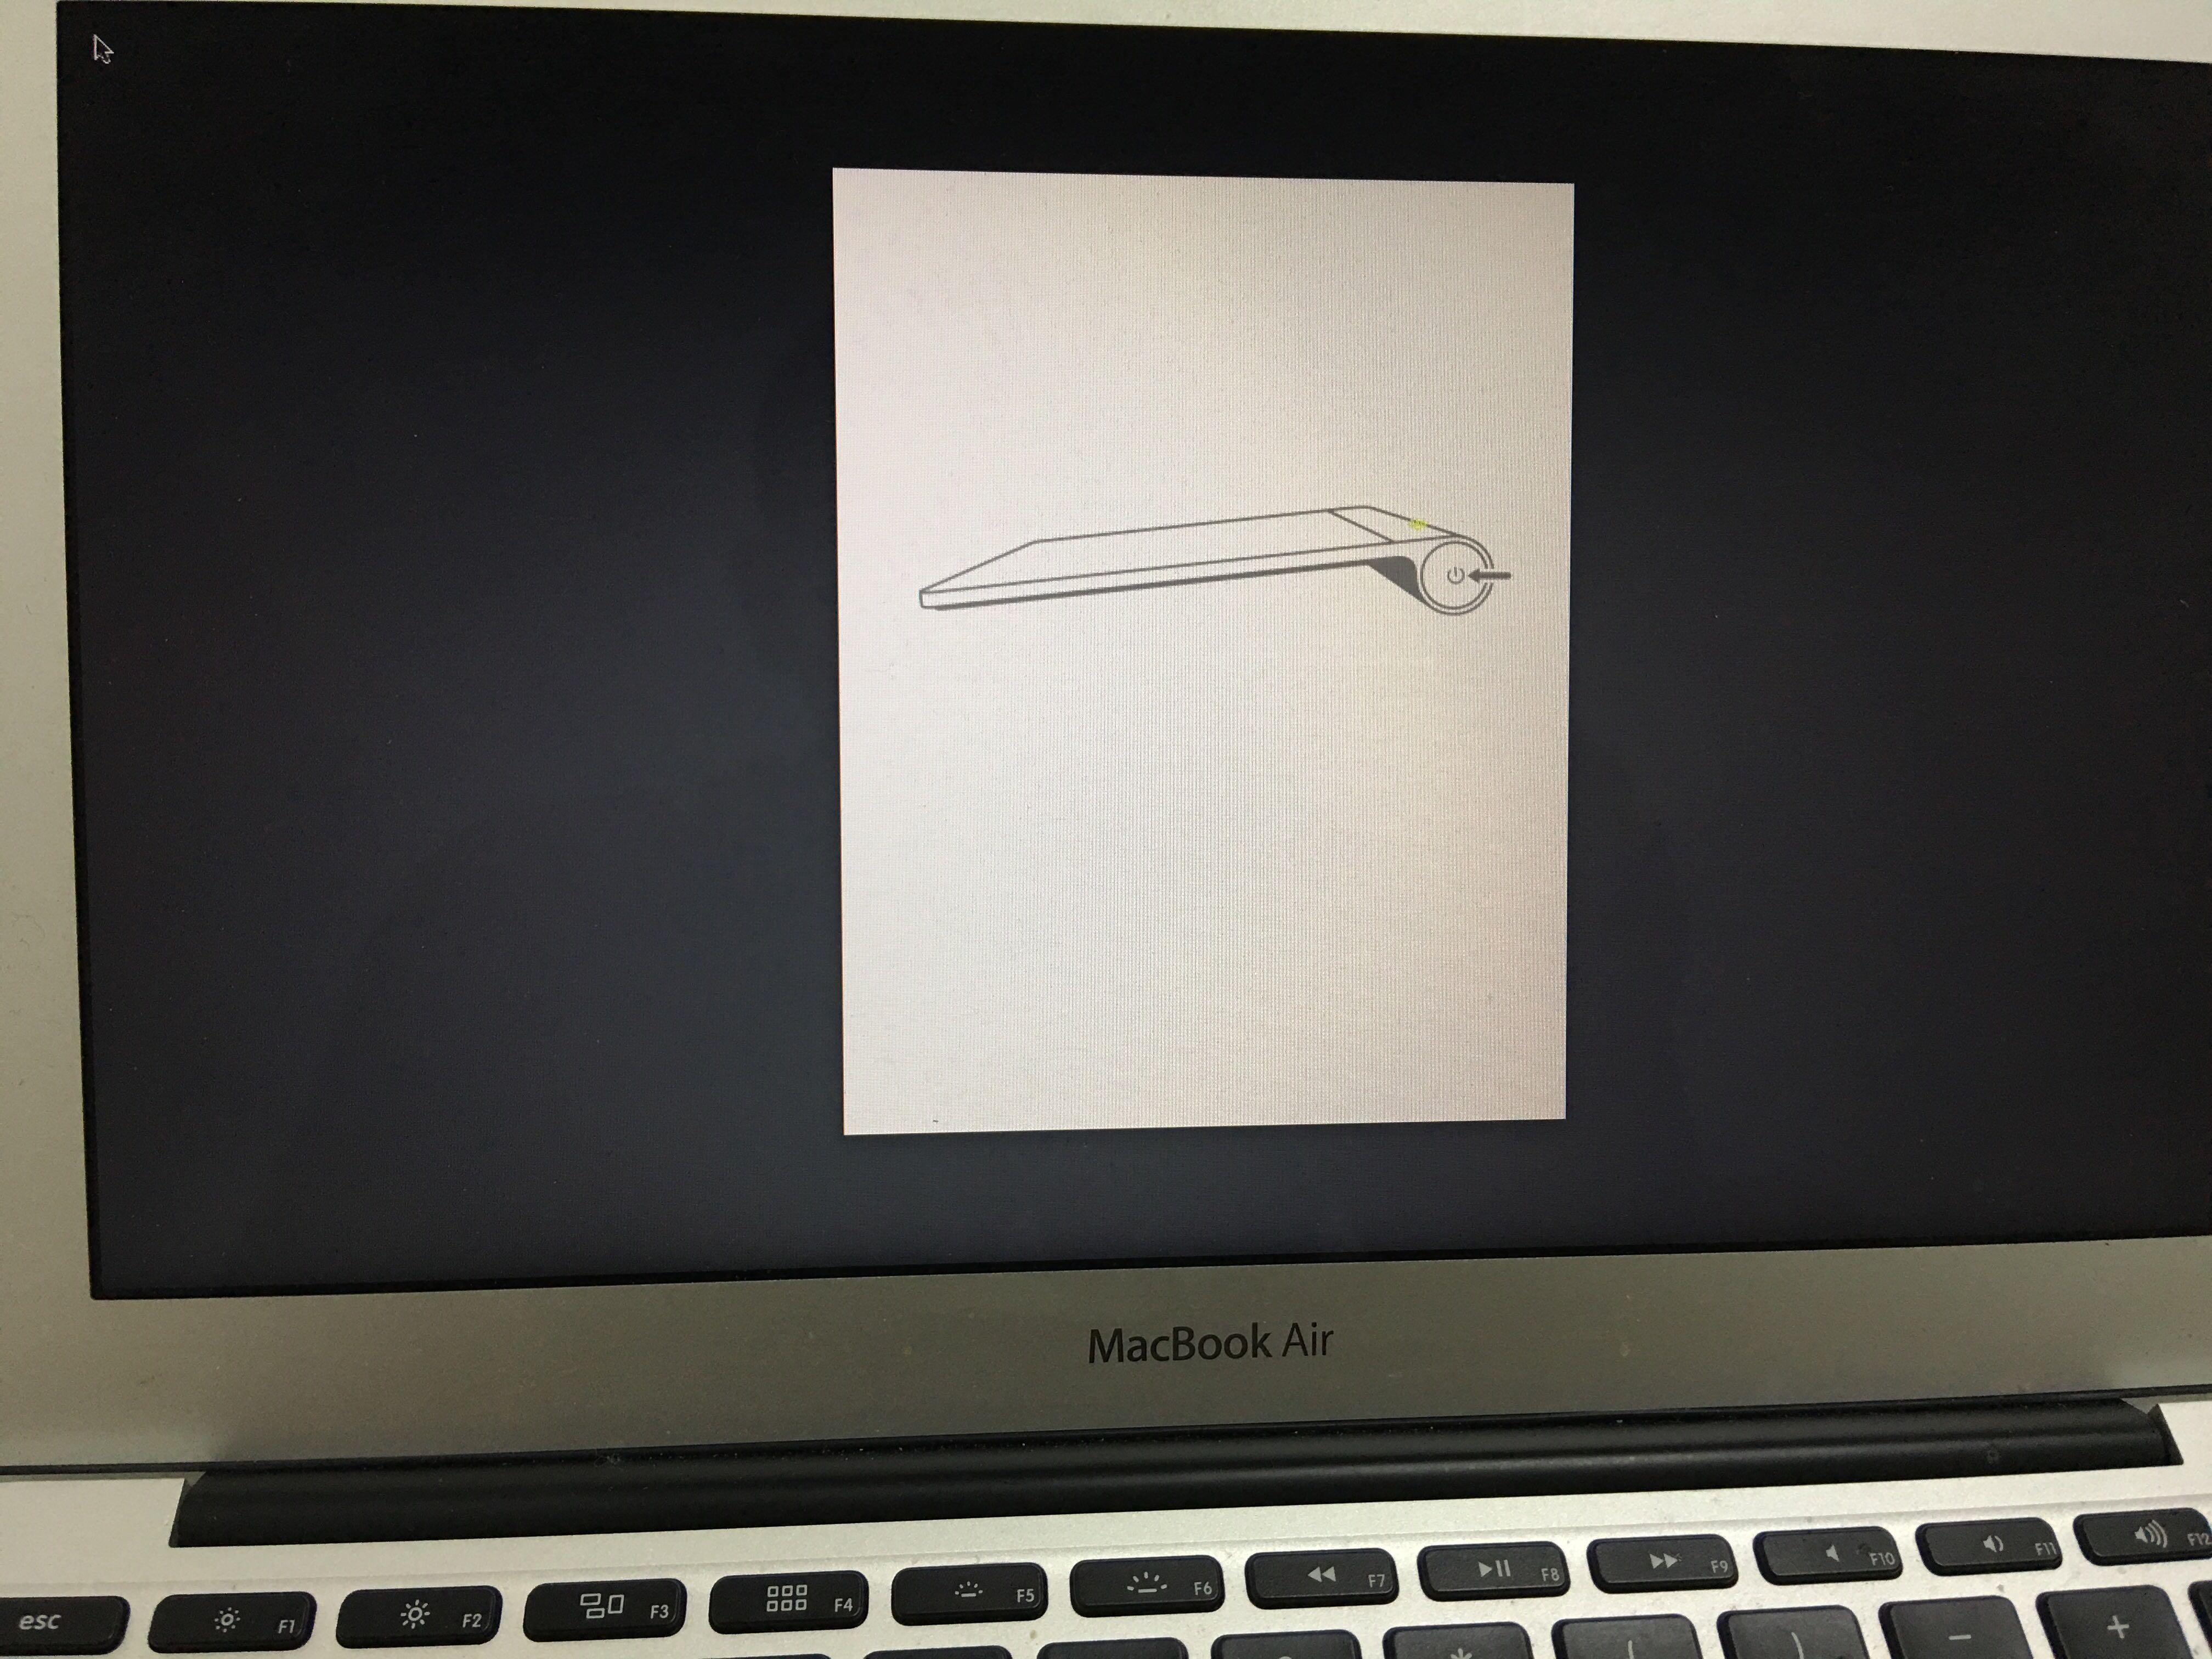 Mac book air 开机无法进入系统,提示画面完全